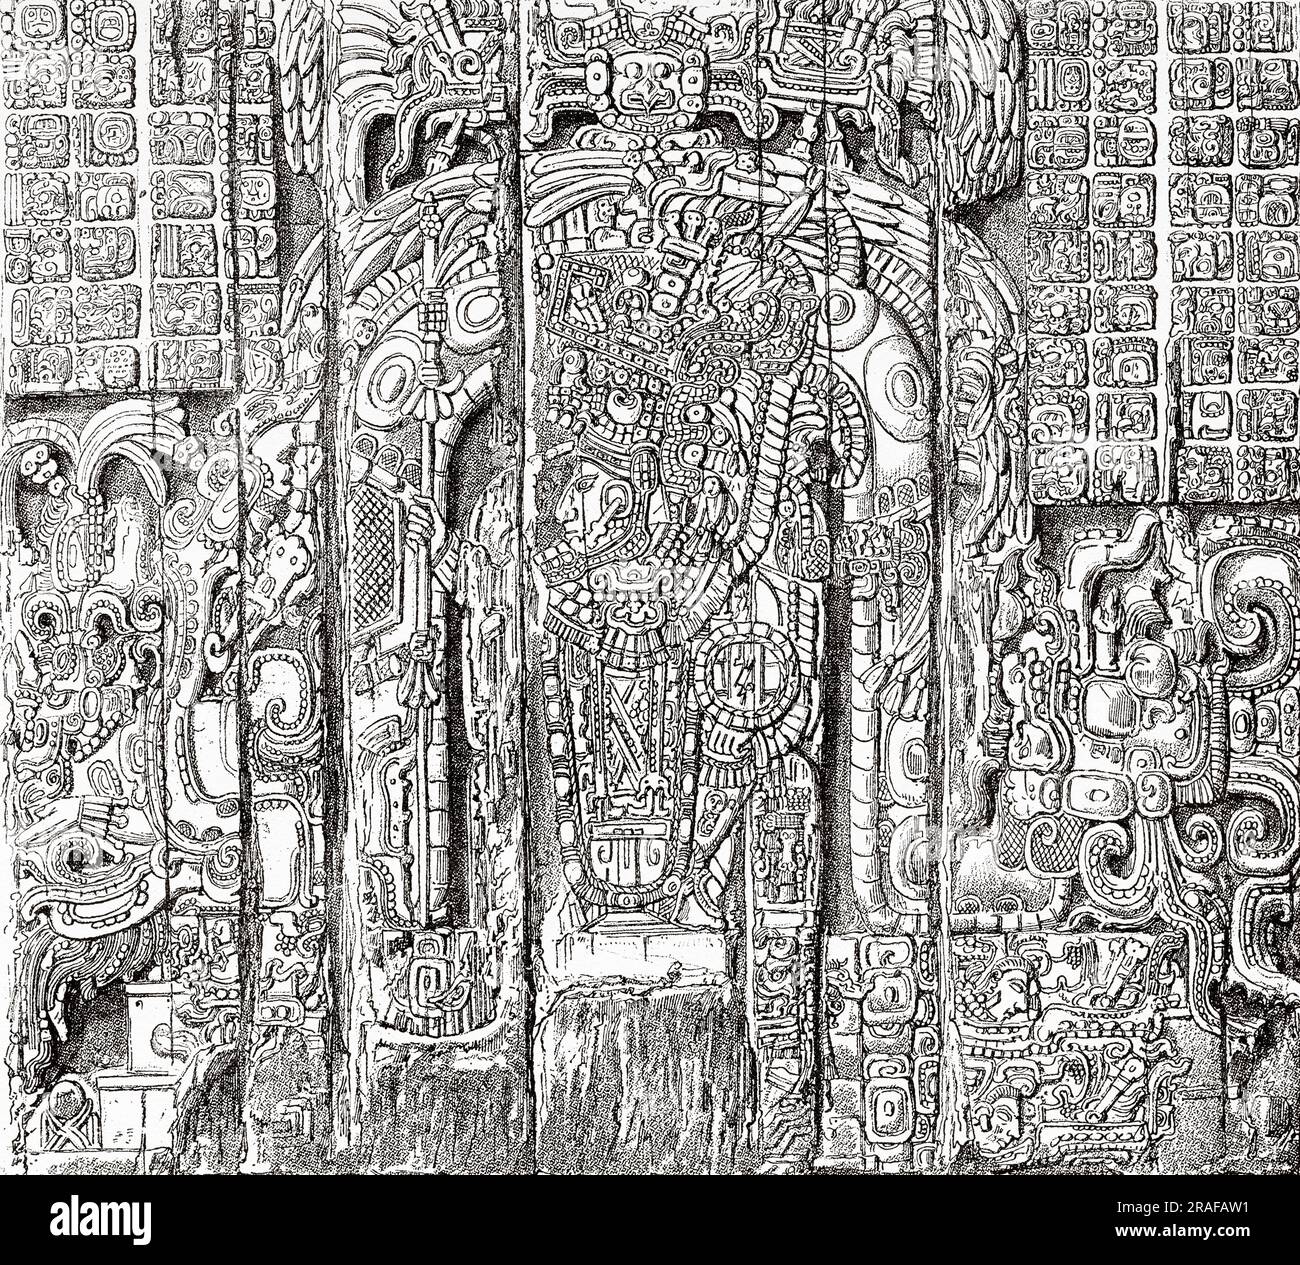 Altar-Hintergrund eines der Sonne gewidmeten Tempels in Tikal, Guatemala. Mittelamerika. Ausflug Zum Yucatan Und Zum Land Der Lacandonen Mit Désiré Charnay 1880. Alte Gravur aus dem 19. Jahrhundert von Le Tour du Monde 1906 Stockfoto